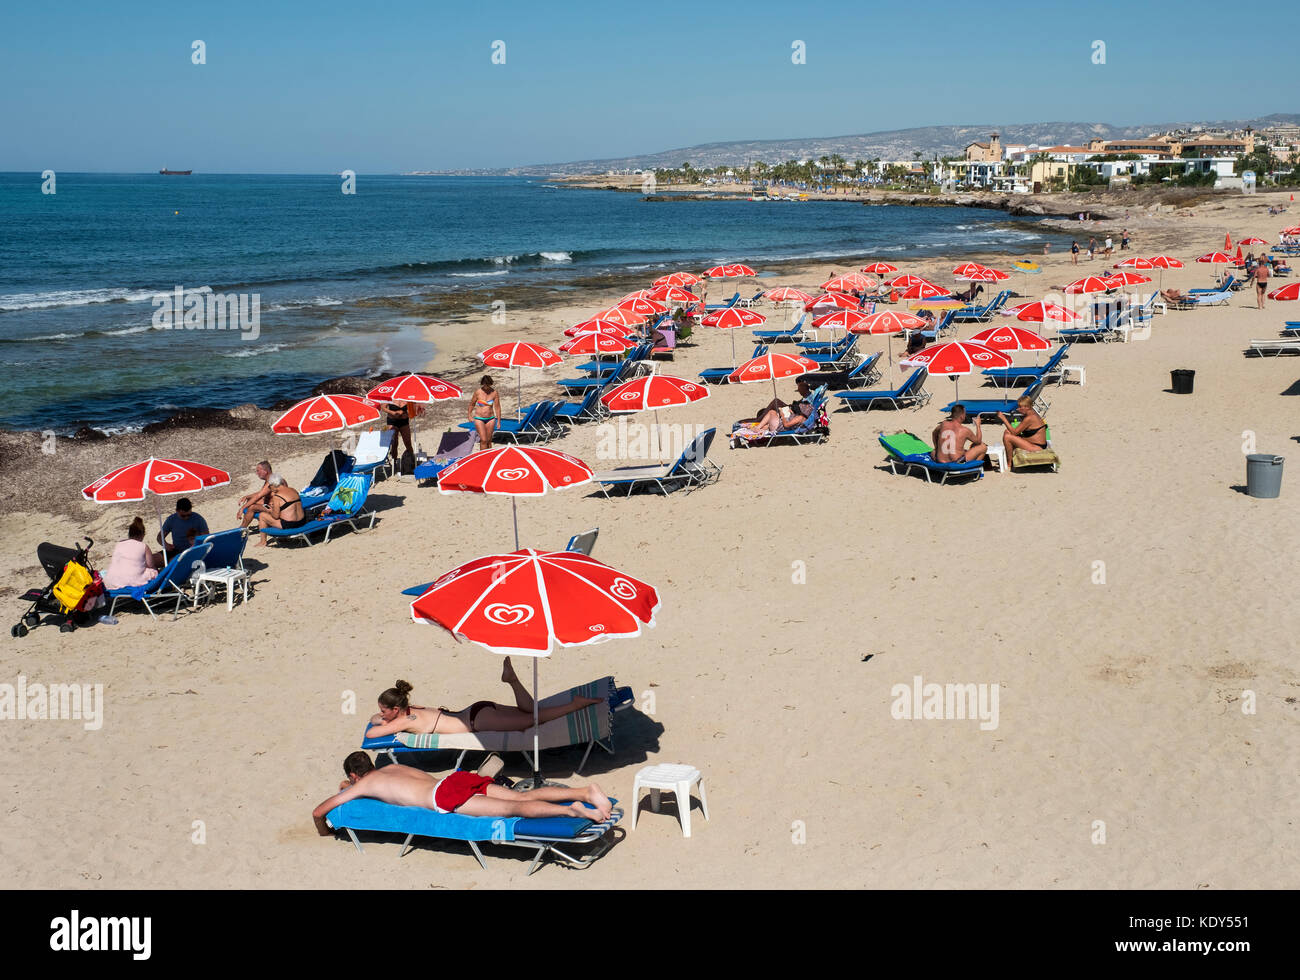 Les vacanciers se prélasser au soleil sur la plage de Kath Municipal de Paphos, Chypre. Banque D'Images